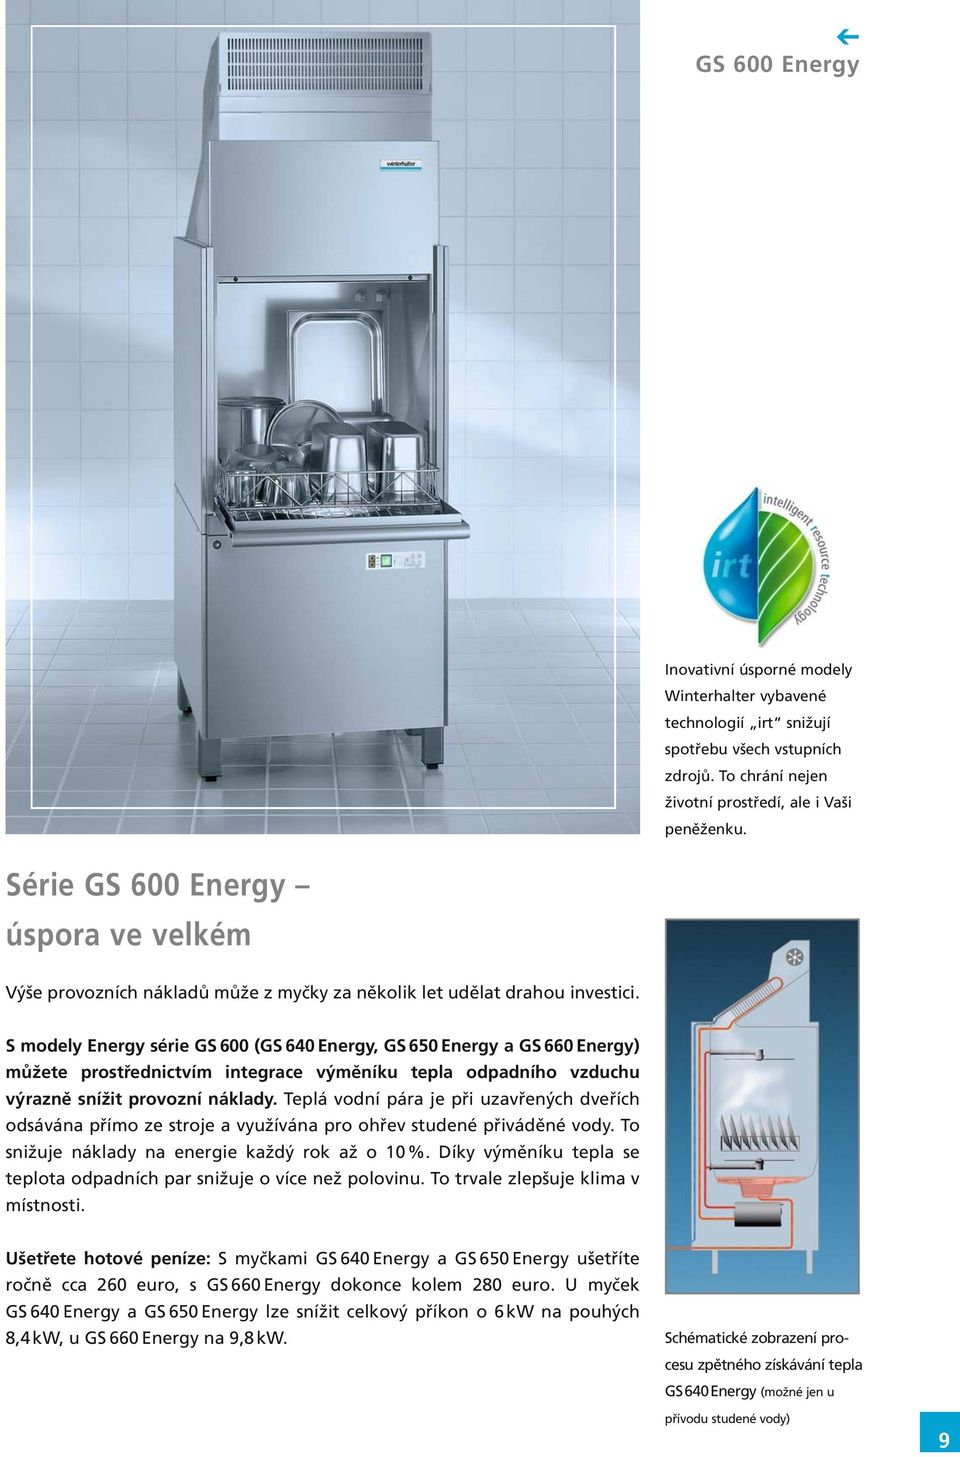 S modely Energy série GS 600 (GS 640 Energy, GS 650 Energy a GS 660 Energy) můžete prostřednictvím integrace výměníku tepla odpadního vzduchu výrazně snížit provozní náklady.